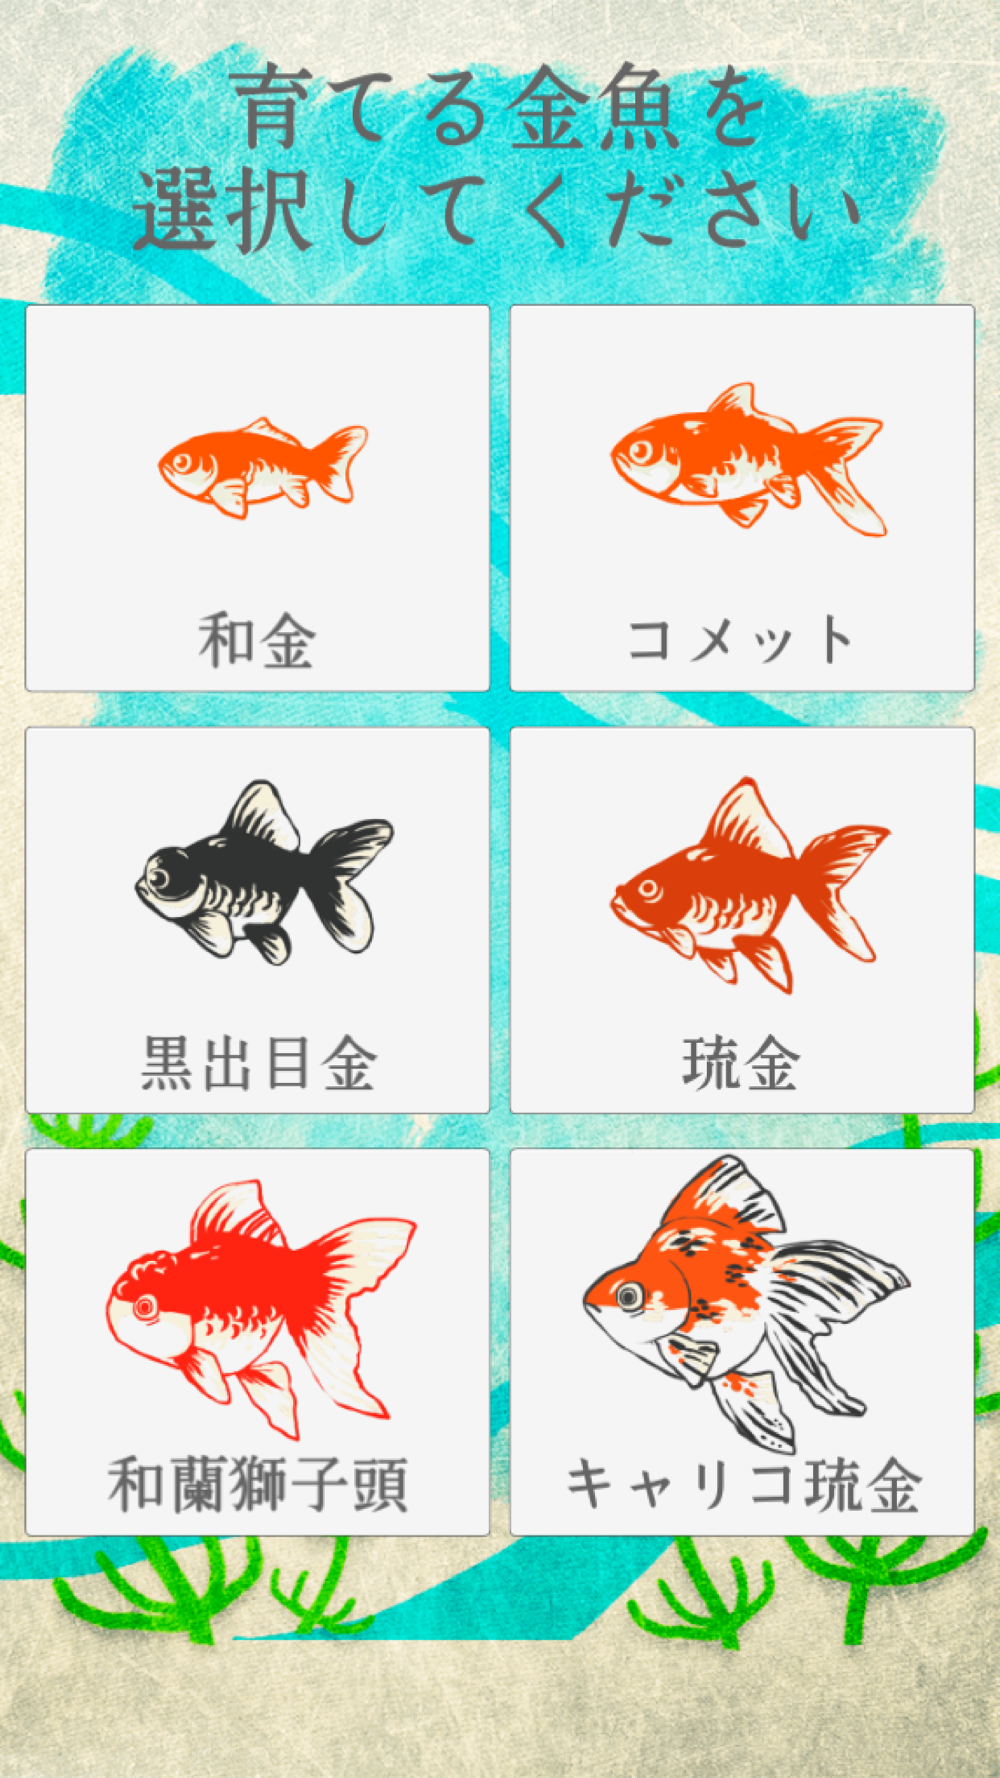 金魚育成アプリ 簡単なお世話でキンギョを育てる癒しのゲーム Free Download App For Iphone Steprimo Com